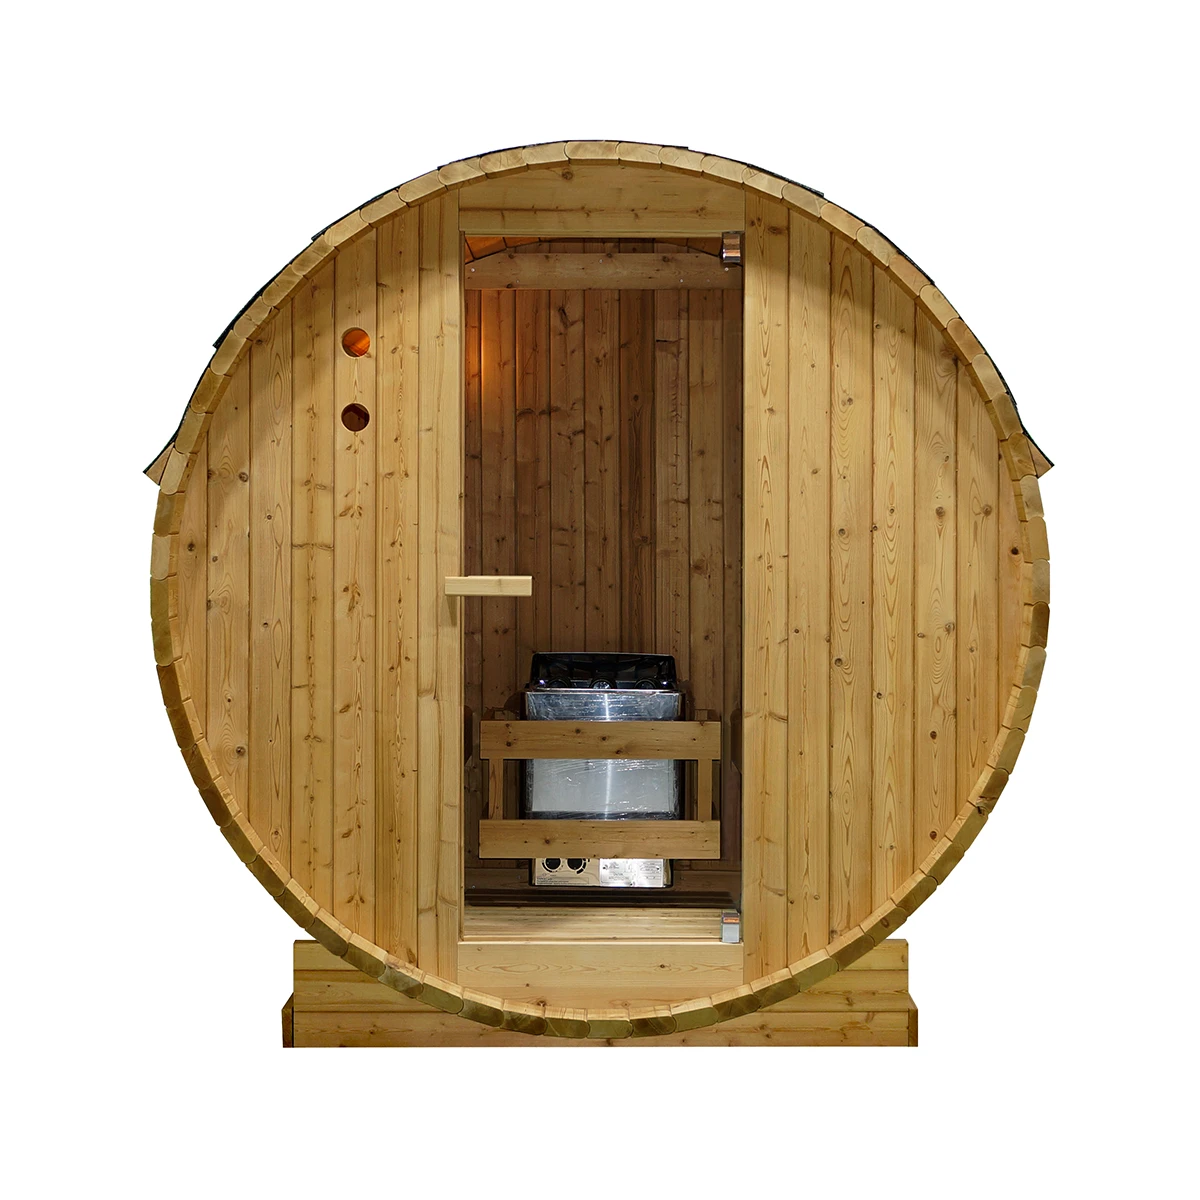 WELCON Easyheat Outdoor Fasssauna 230 Volt - Sauna für den Garten für zwei Personen